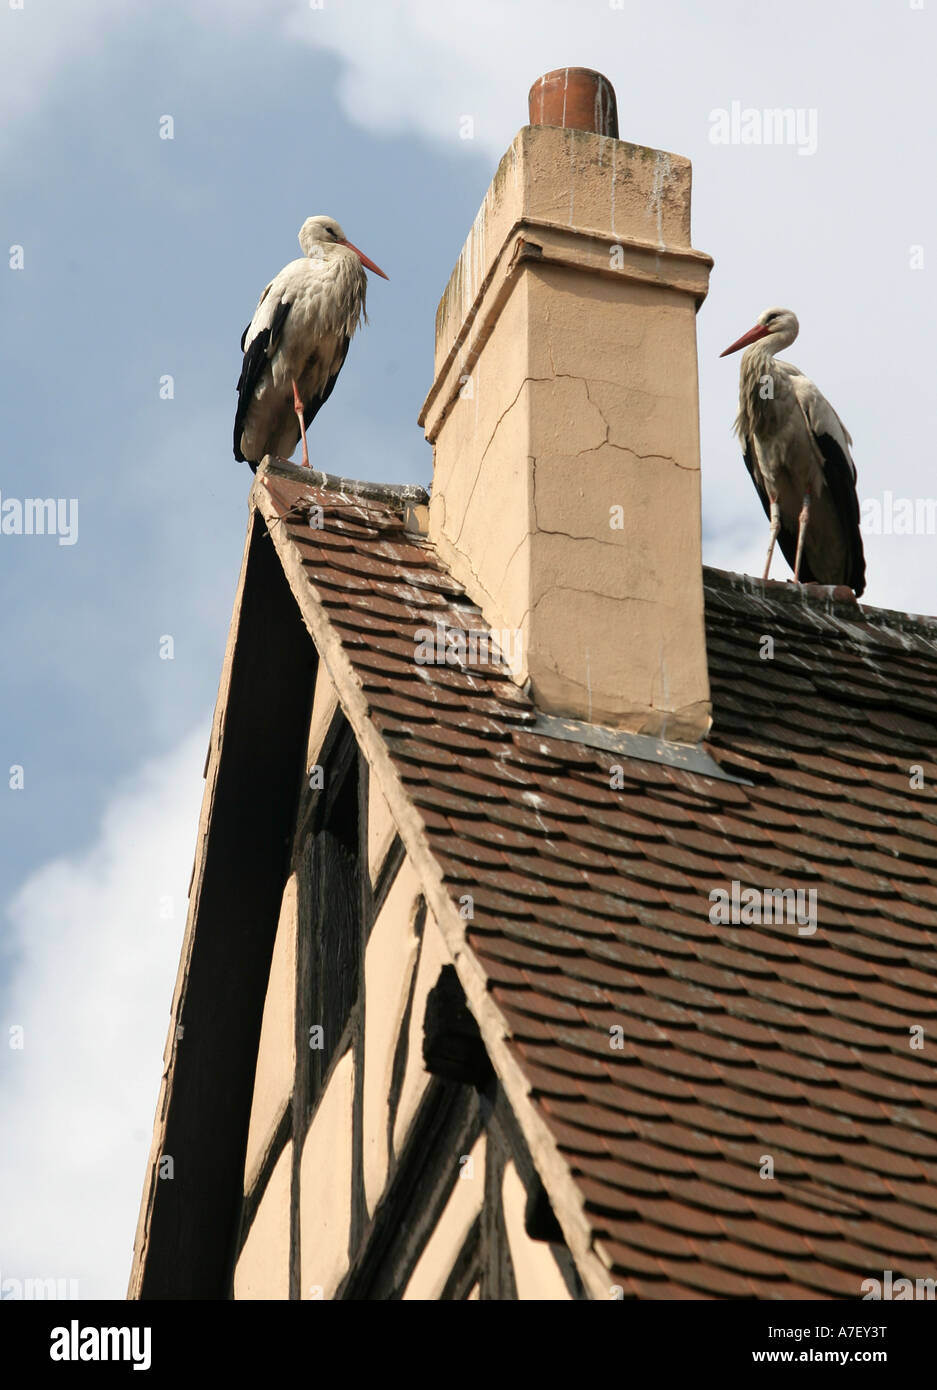 Les cigognes Ciconia ciconia sur le toit d'une maison de Kaisersberg, Alsace, France Banque D'Images